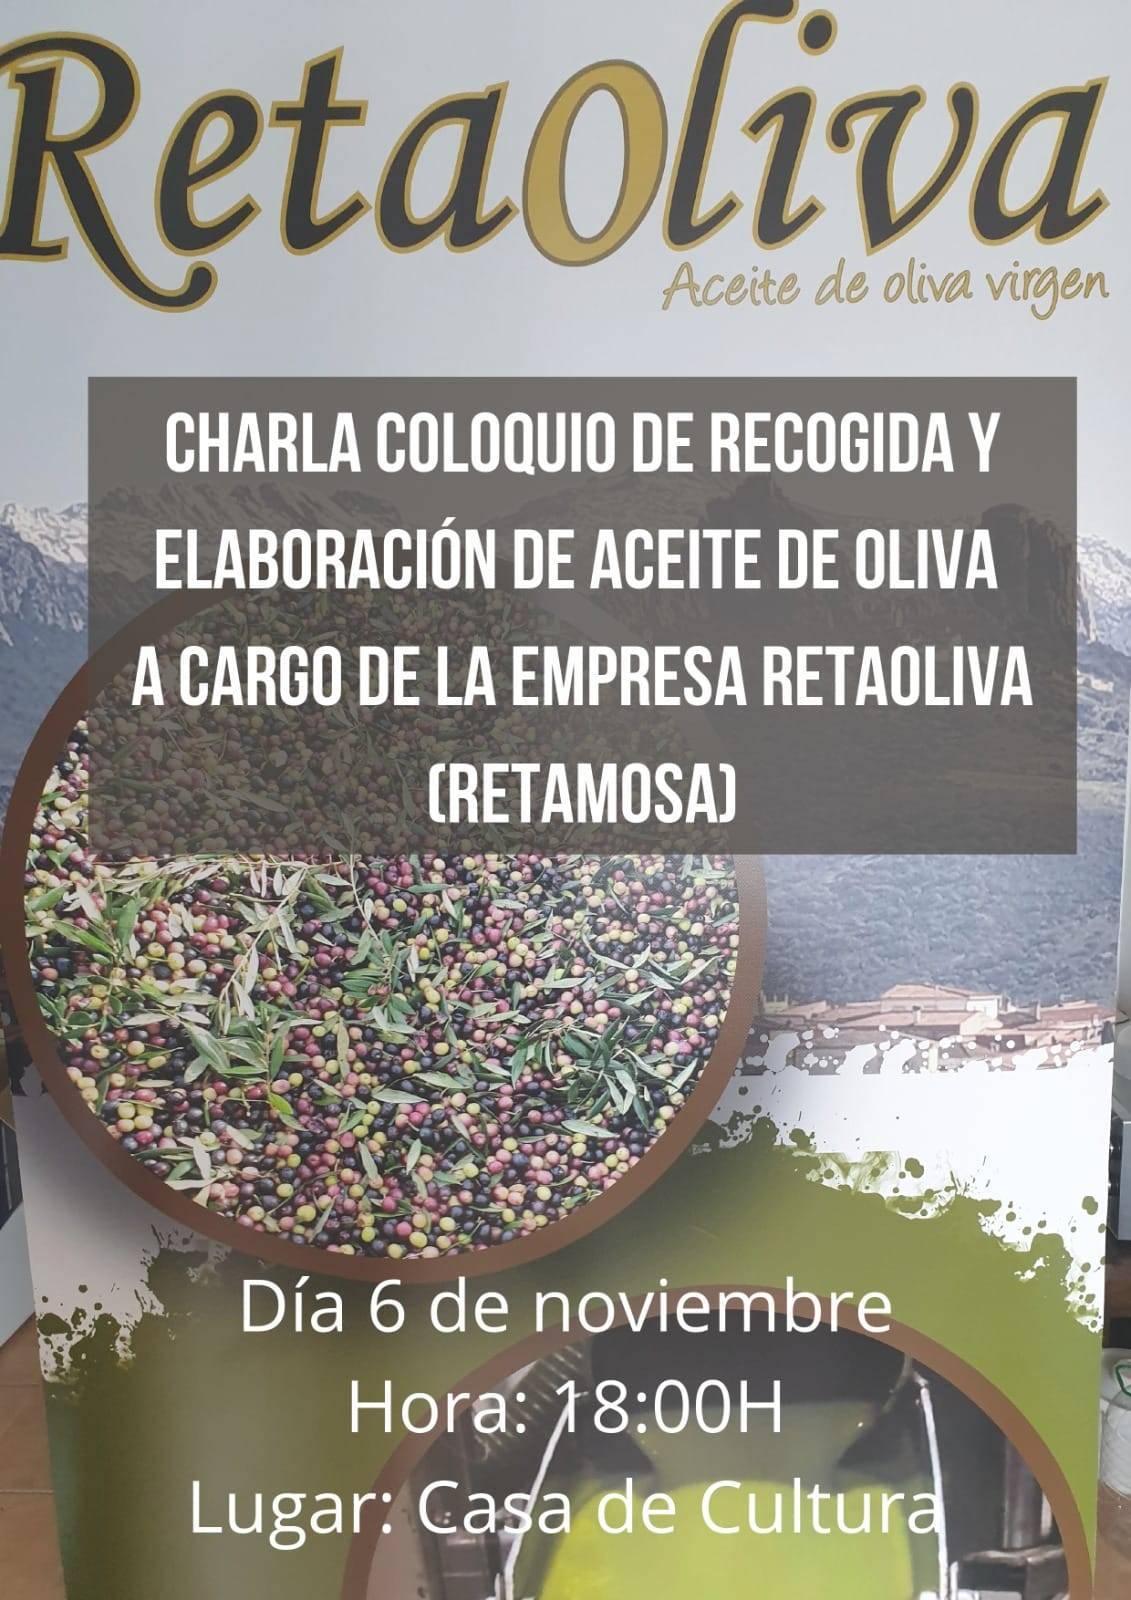 Charla coloquio de recogida y elaboración de aceite de oliva (noviembre 2021) - Zorita (Cáceres)